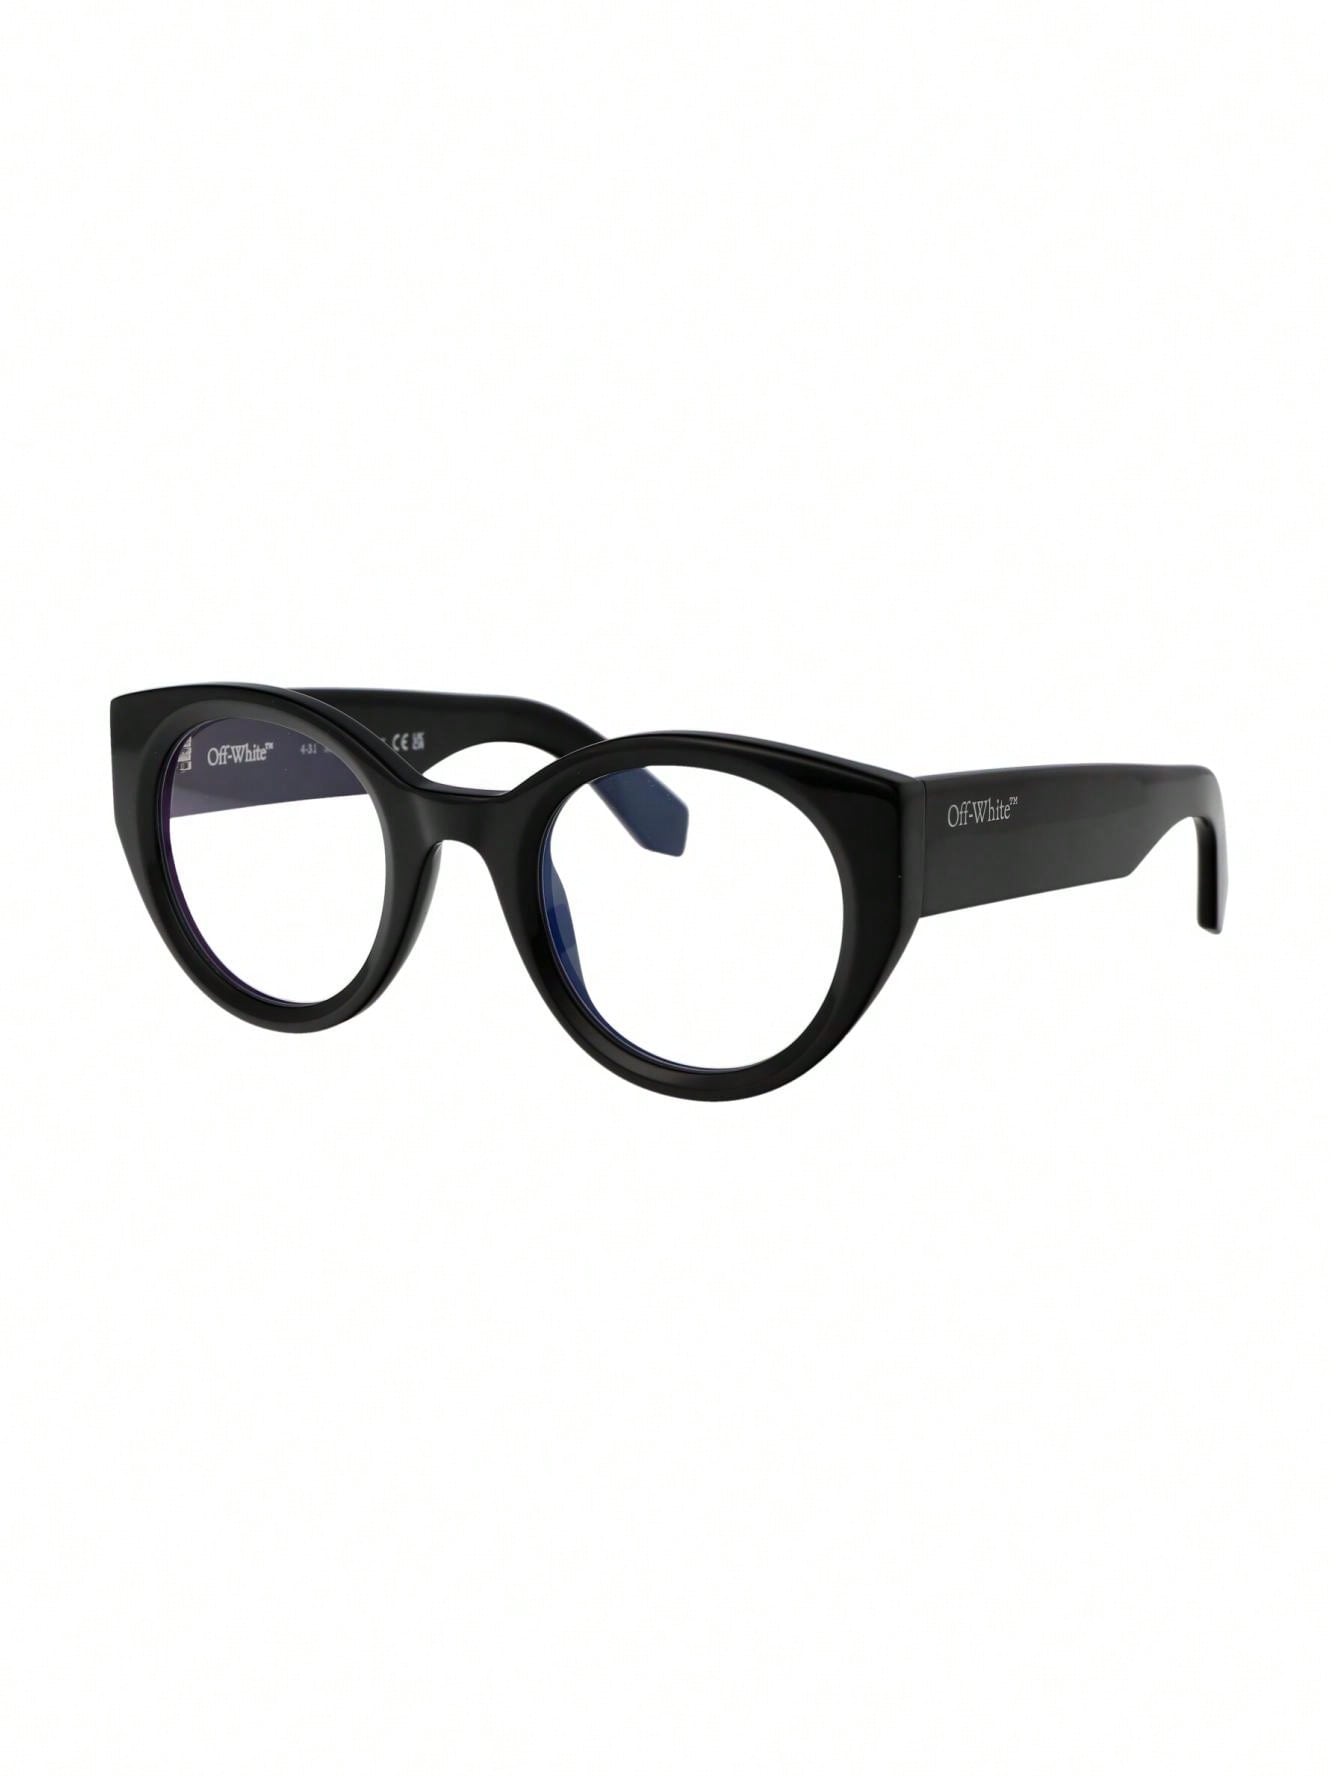 мужские солнцезащитные очки off white черные oeri094f23pla0011007 черный Мужские солнцезащитные очки Off-White БЕЛЫЕ OERJ041F23PLA0011000, белый